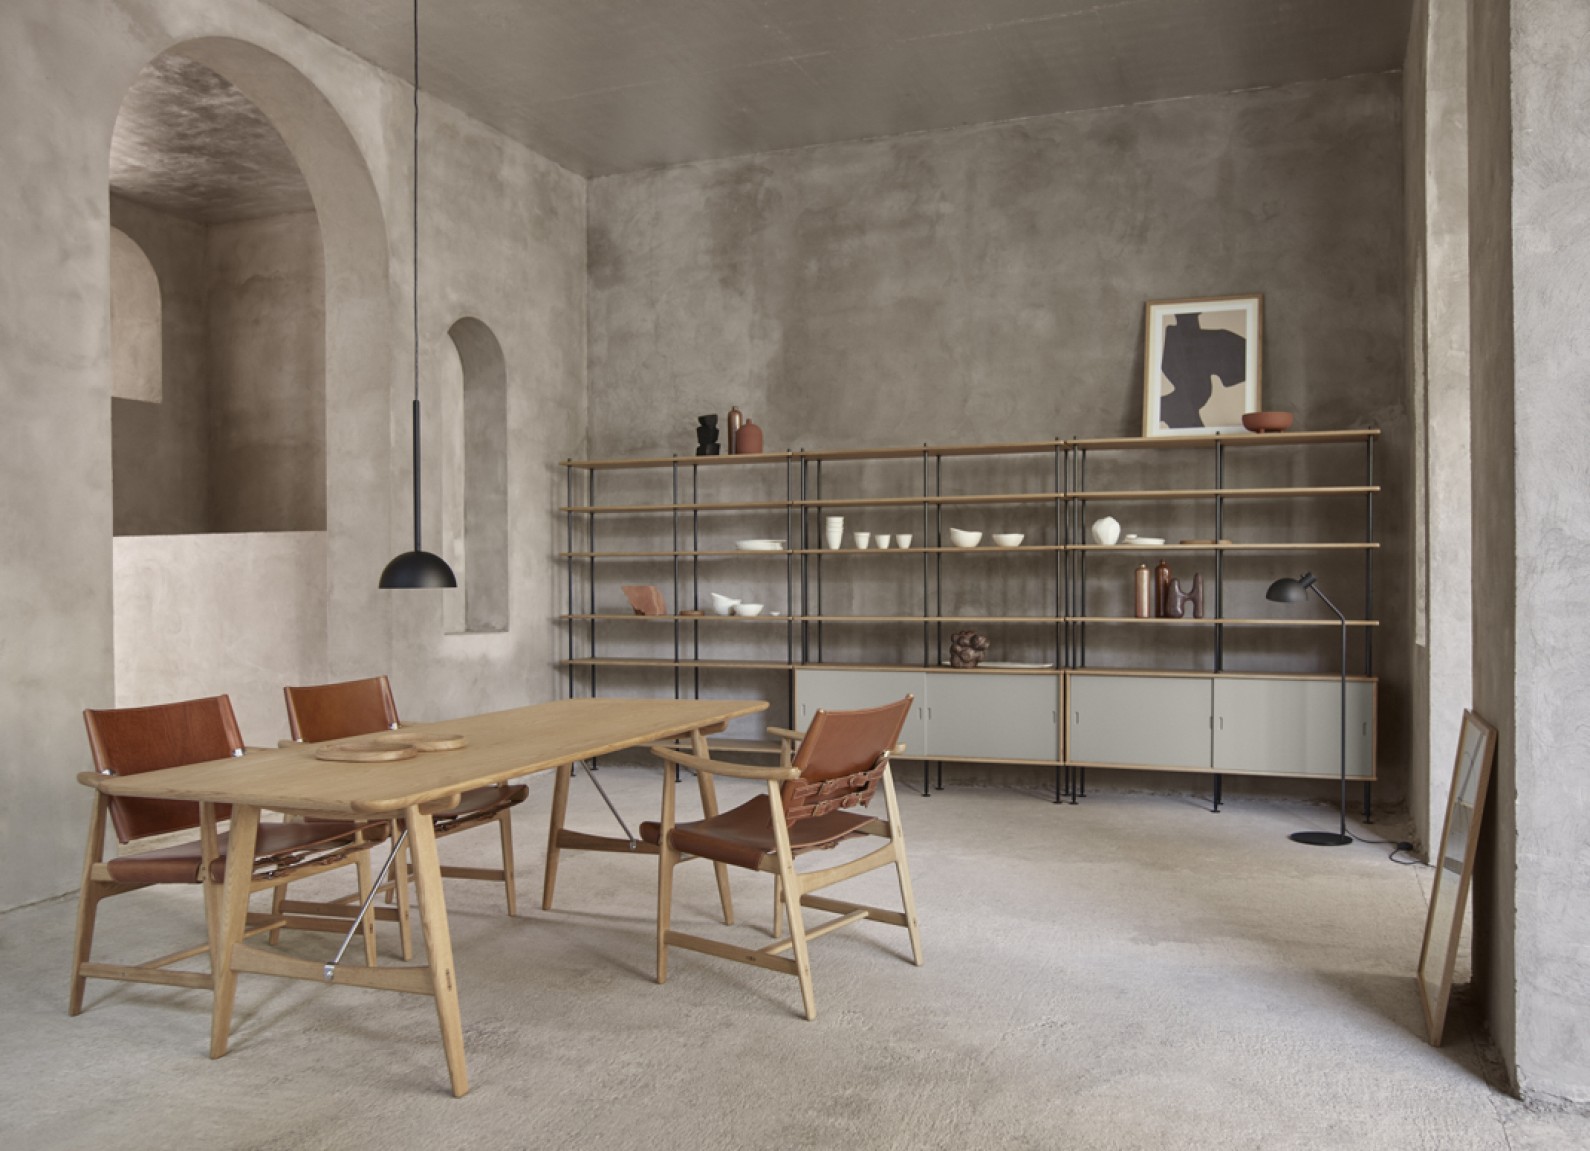 L'architecte Borge Mogensen a conçu de divers meubles en collection chez Carl Hansen & Son